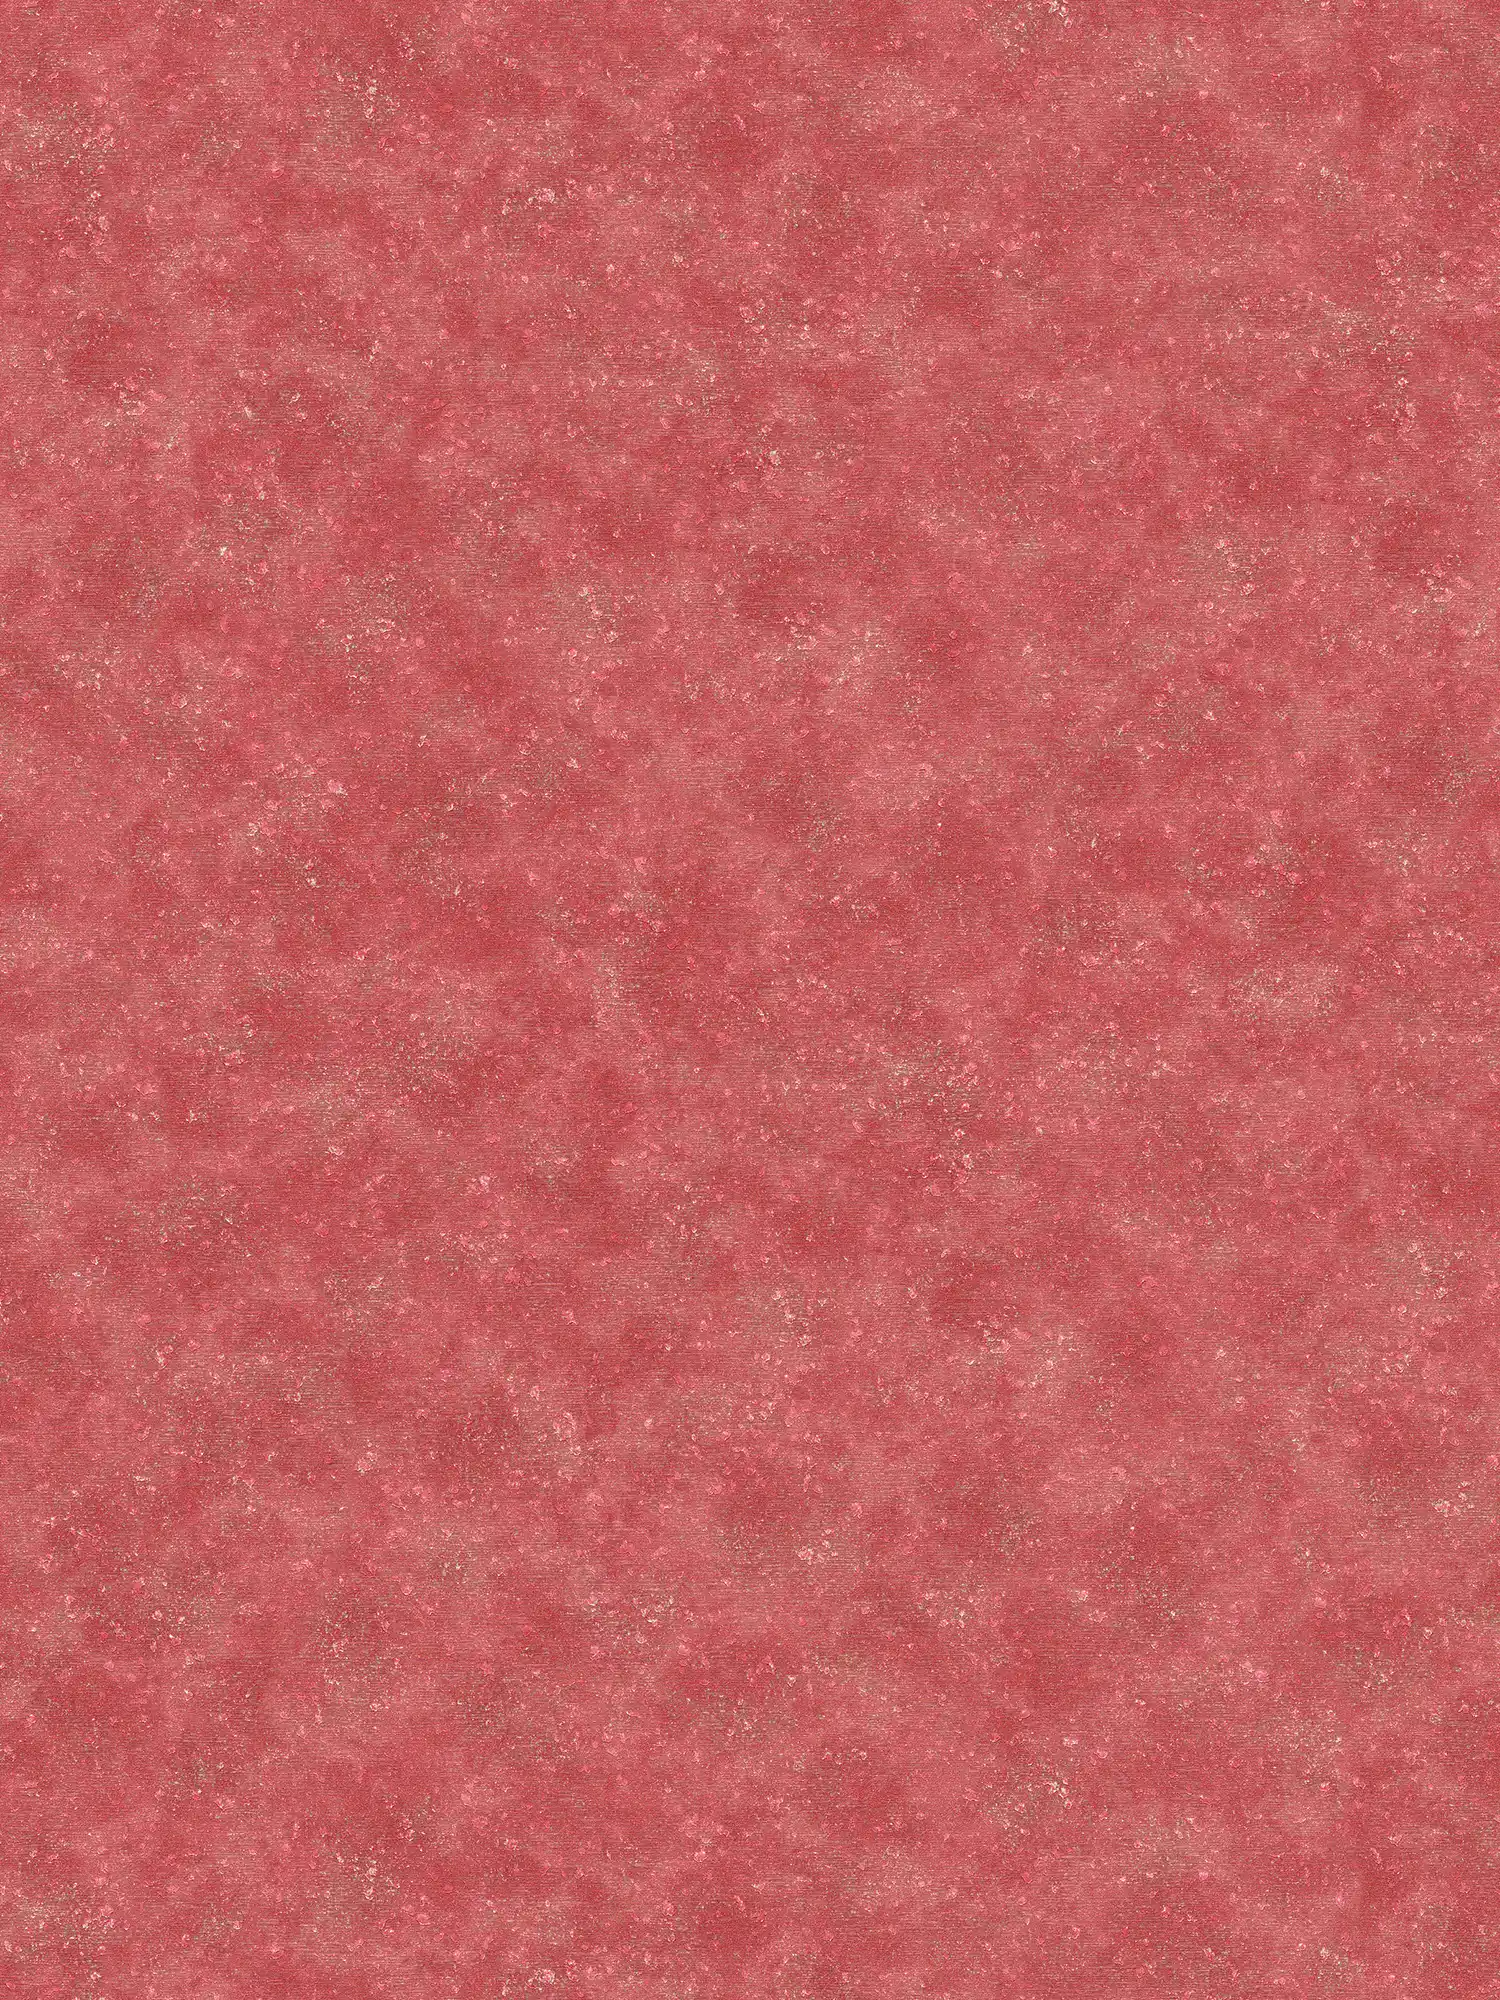 Rote Vliestapete schattiert, seidenmatt mit Textureffekt
